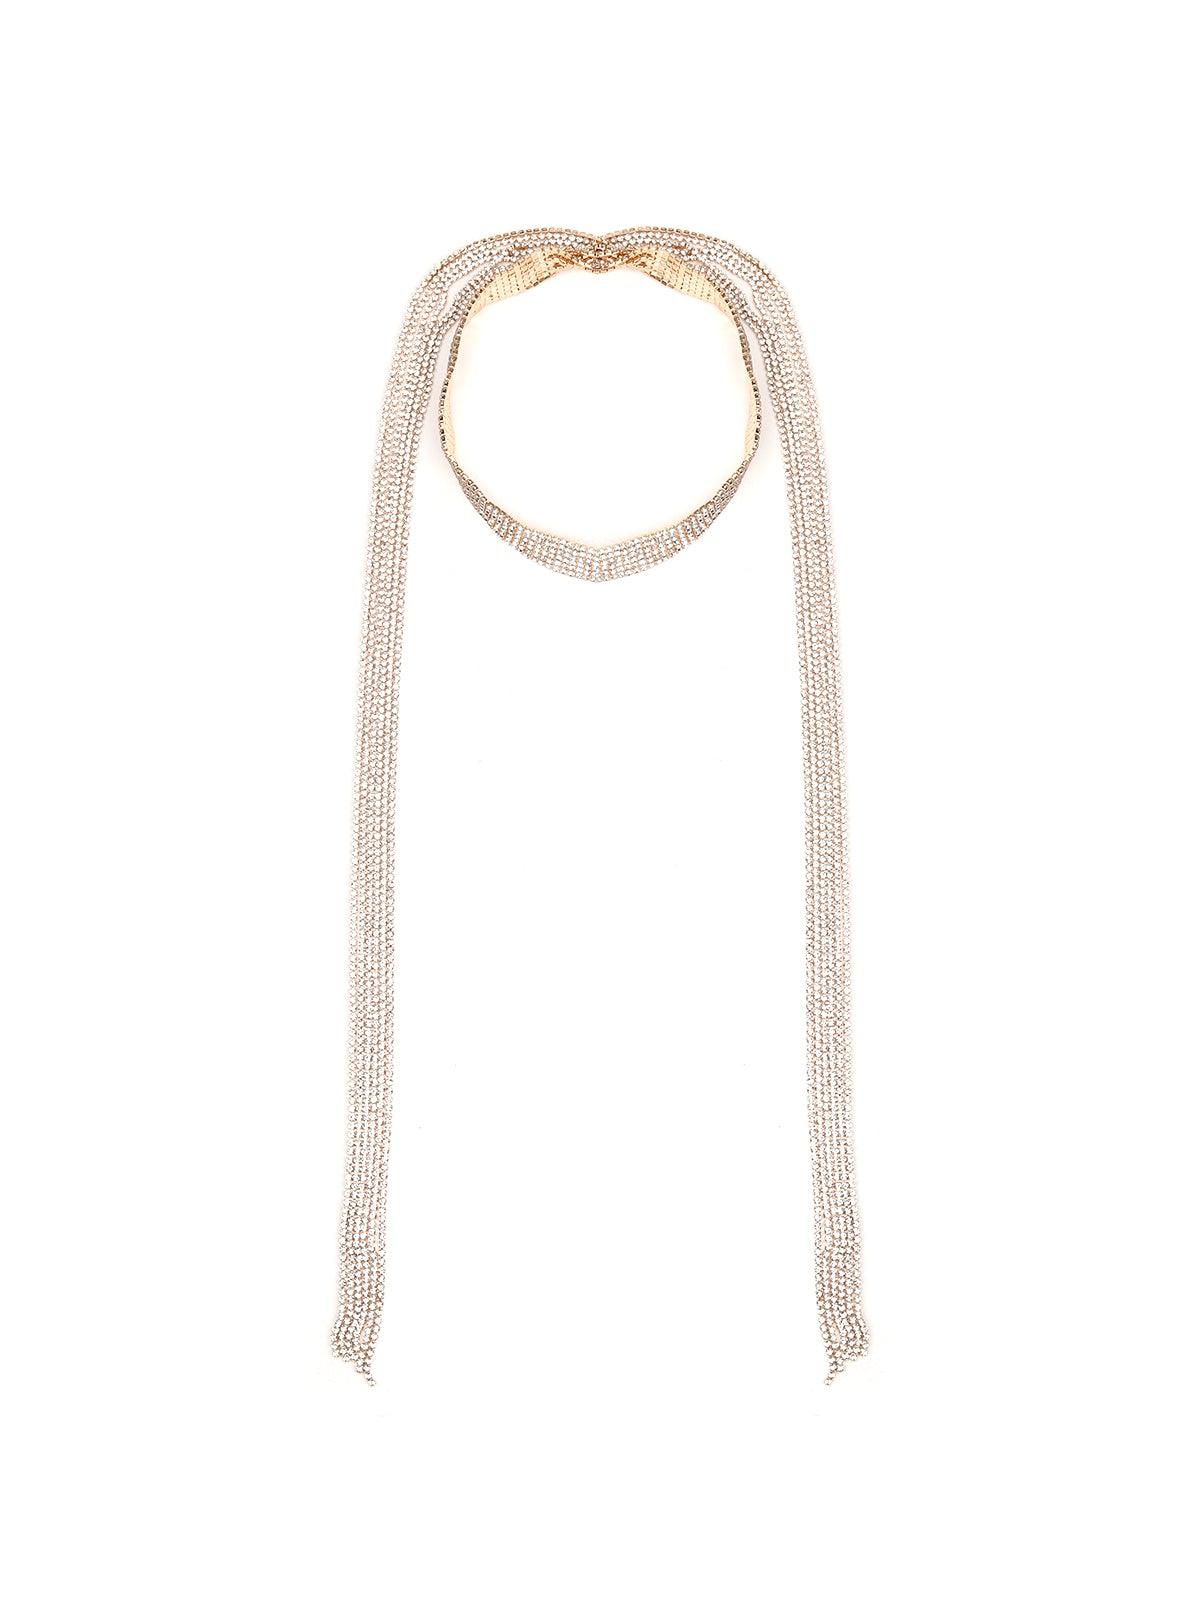 A scarf themed fully studded necklace - Odette